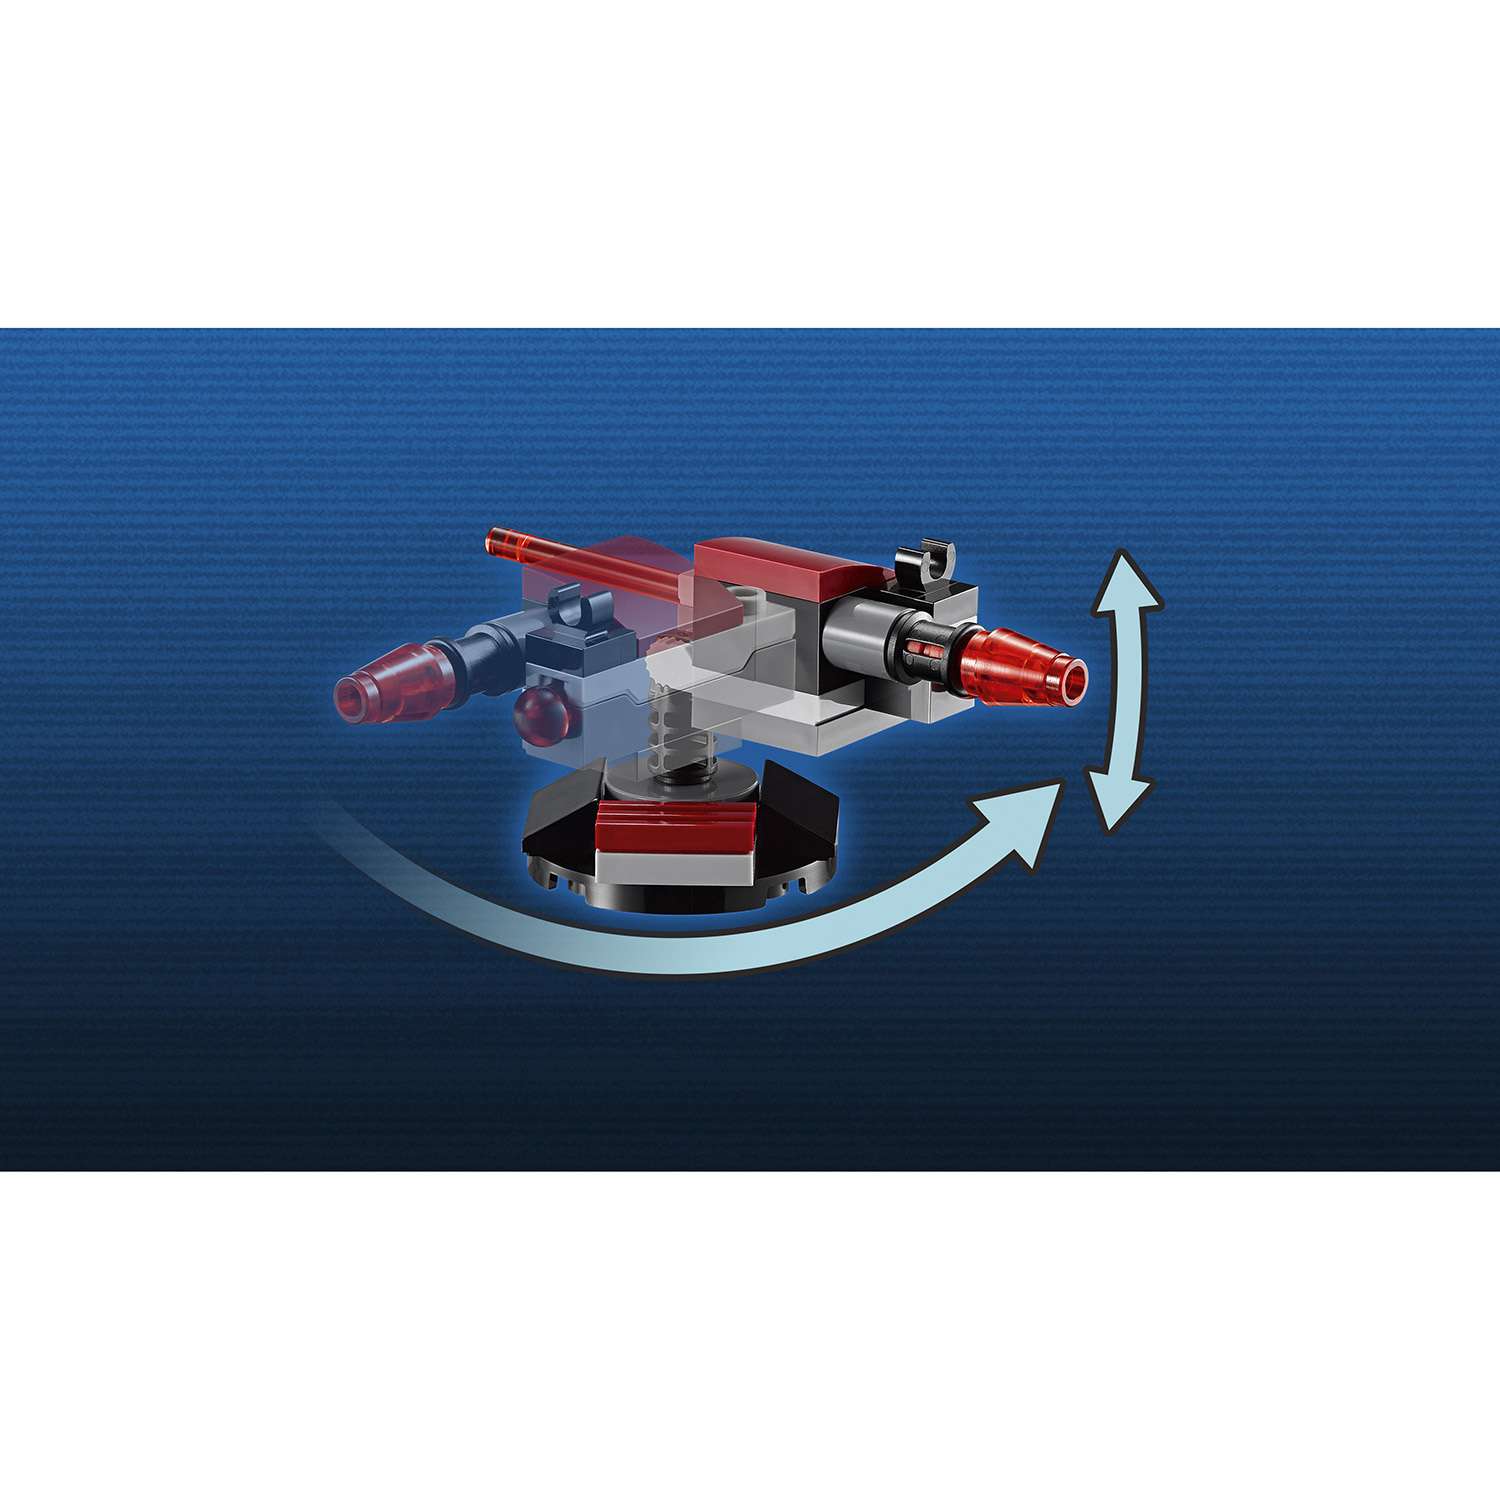 Конструктор LEGO Star Wars TM Боевой набор Галактической Империи™ (75134) - фото 7